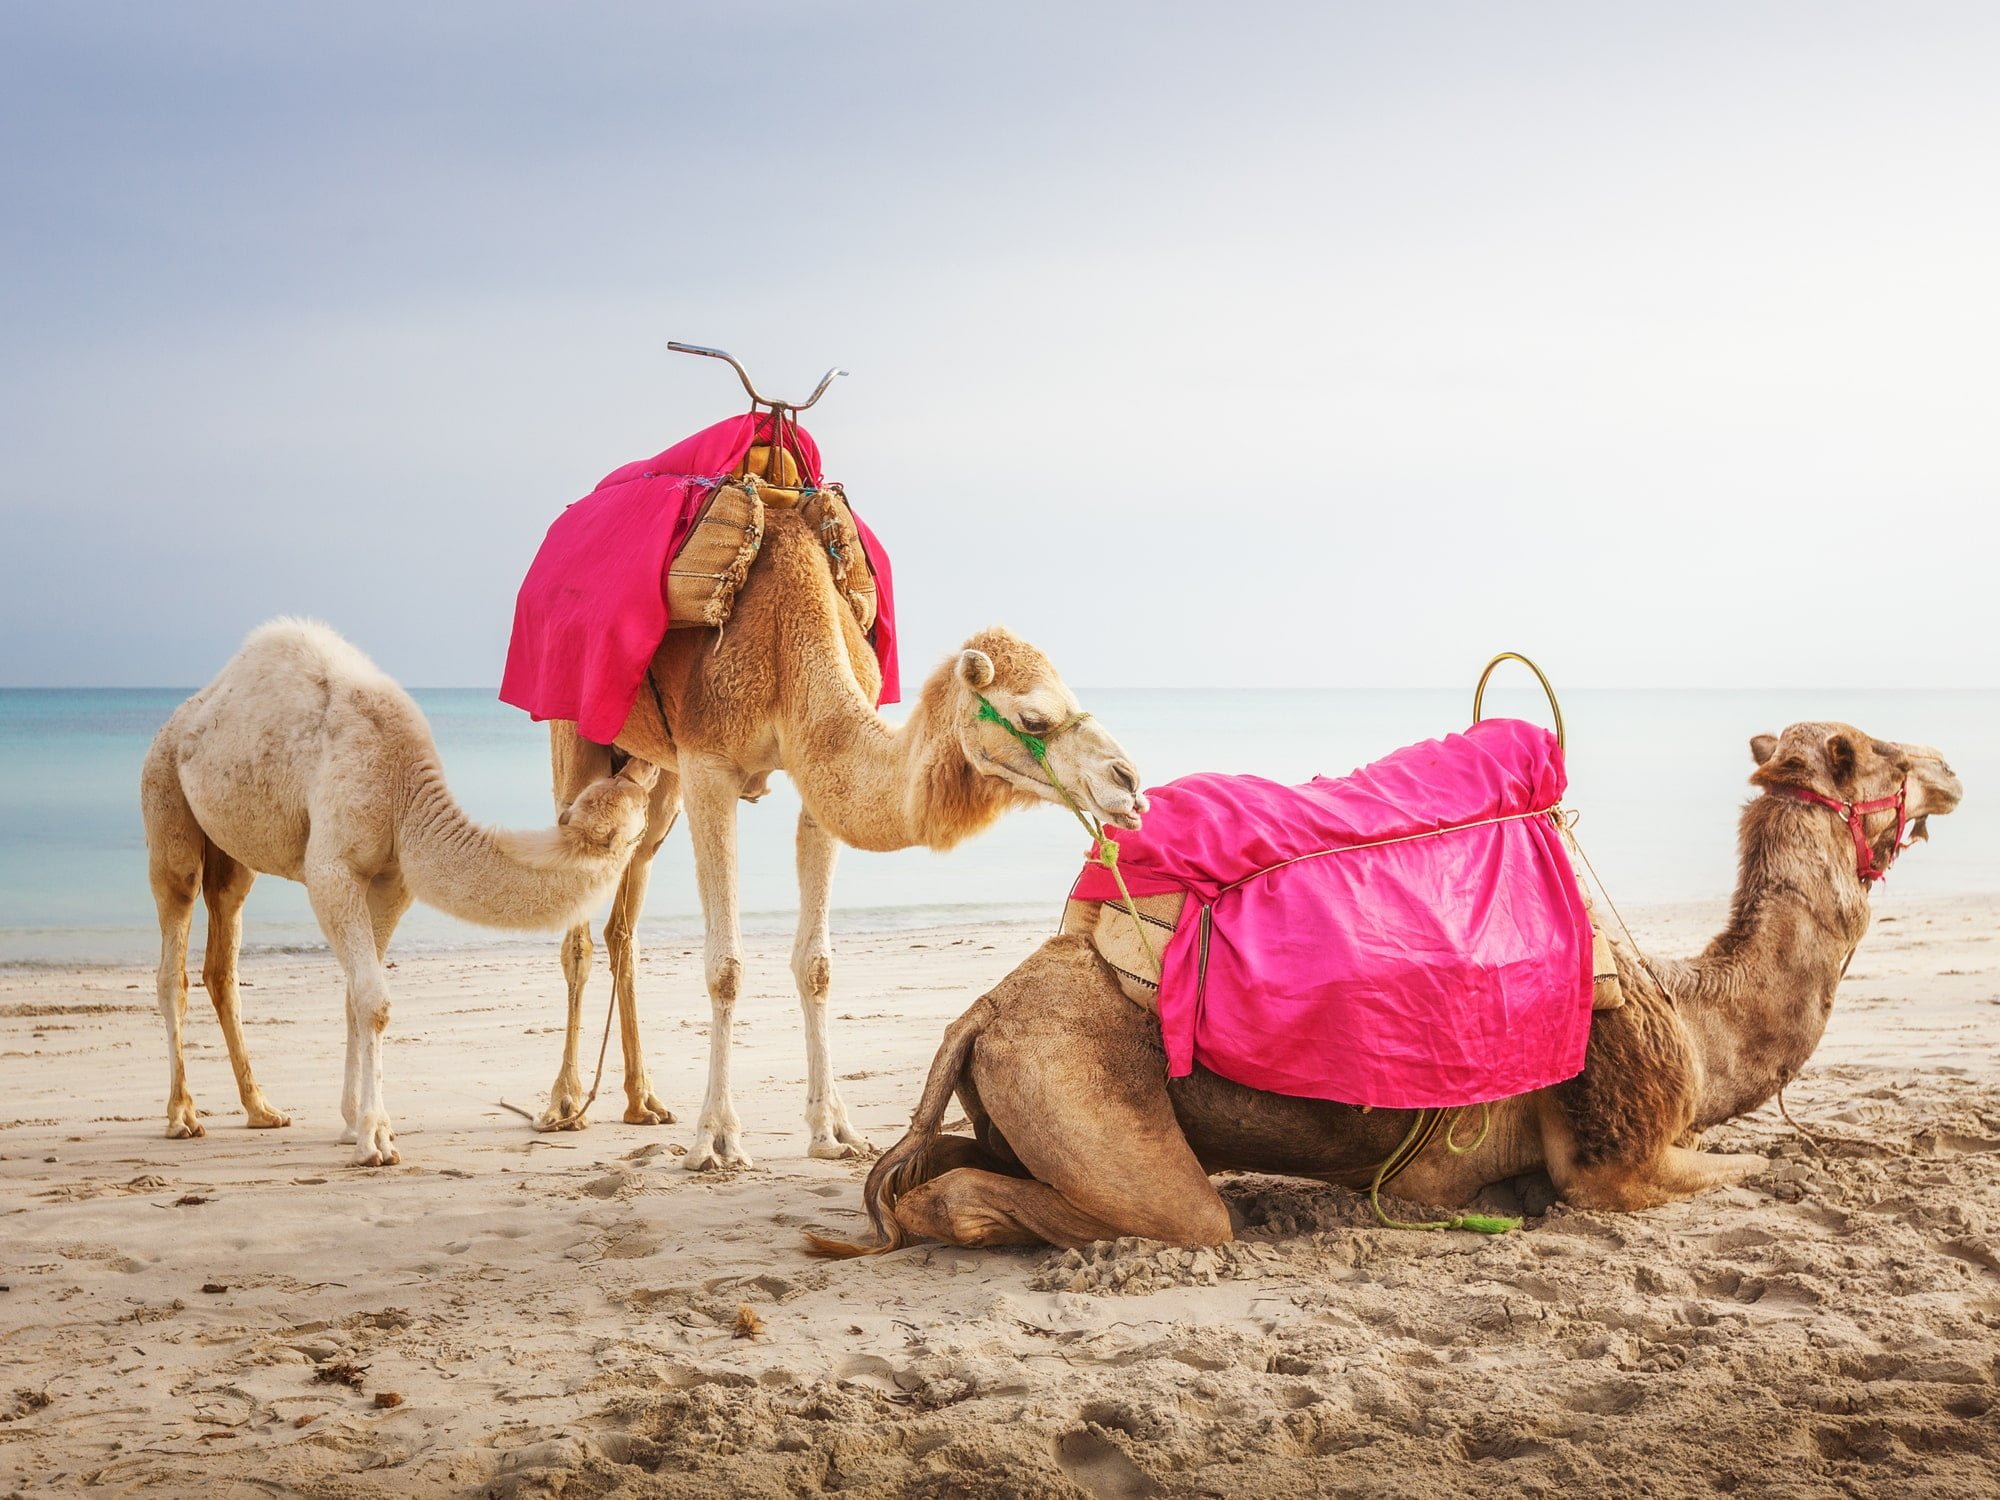 De smukkeste ørkener i verden. Camel family with white baby dromedary on the beach in Tunesia